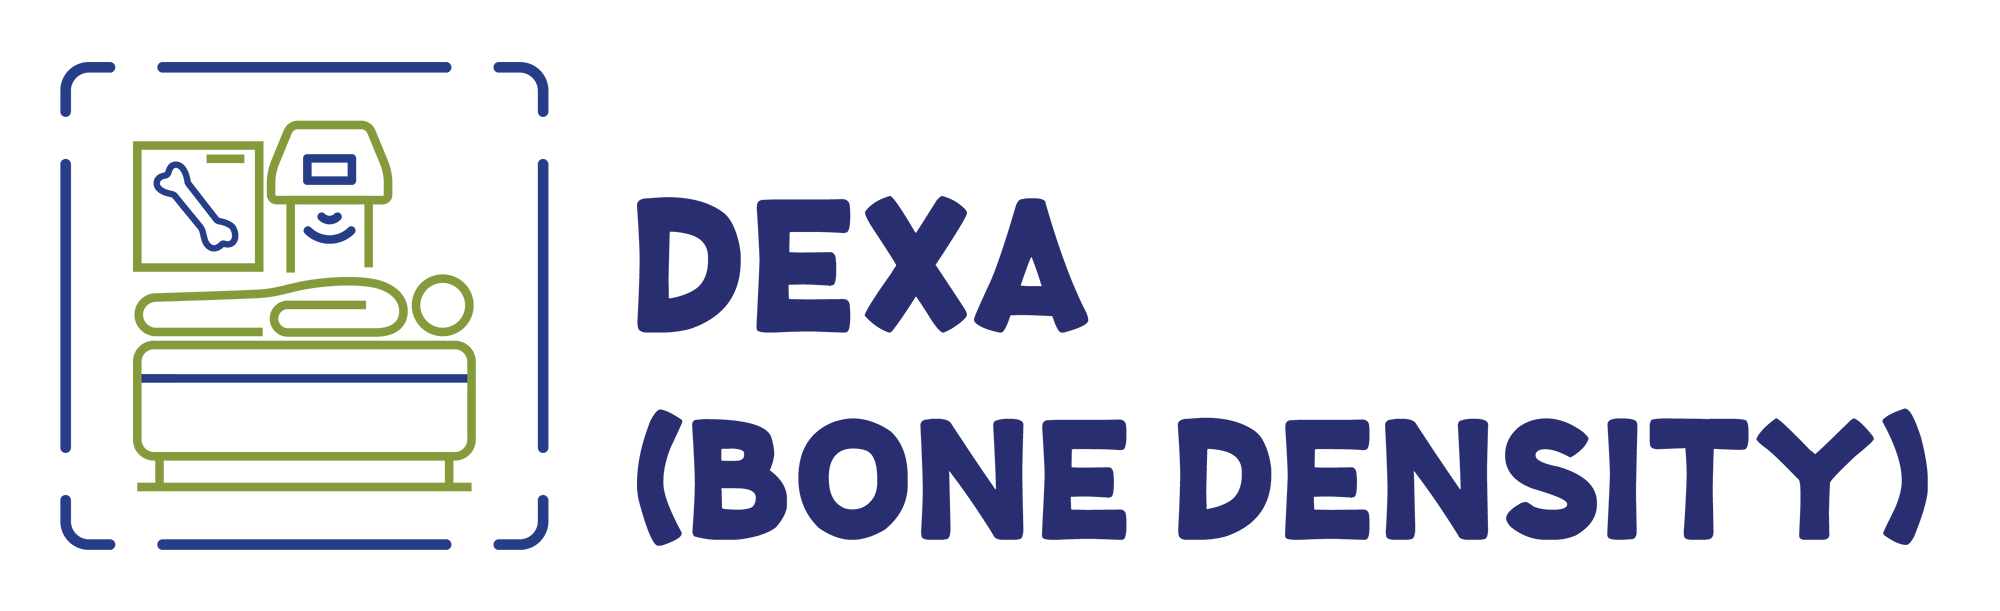 DEXA | Bone Densitometry, Lenox Hill Radiology ACPNY